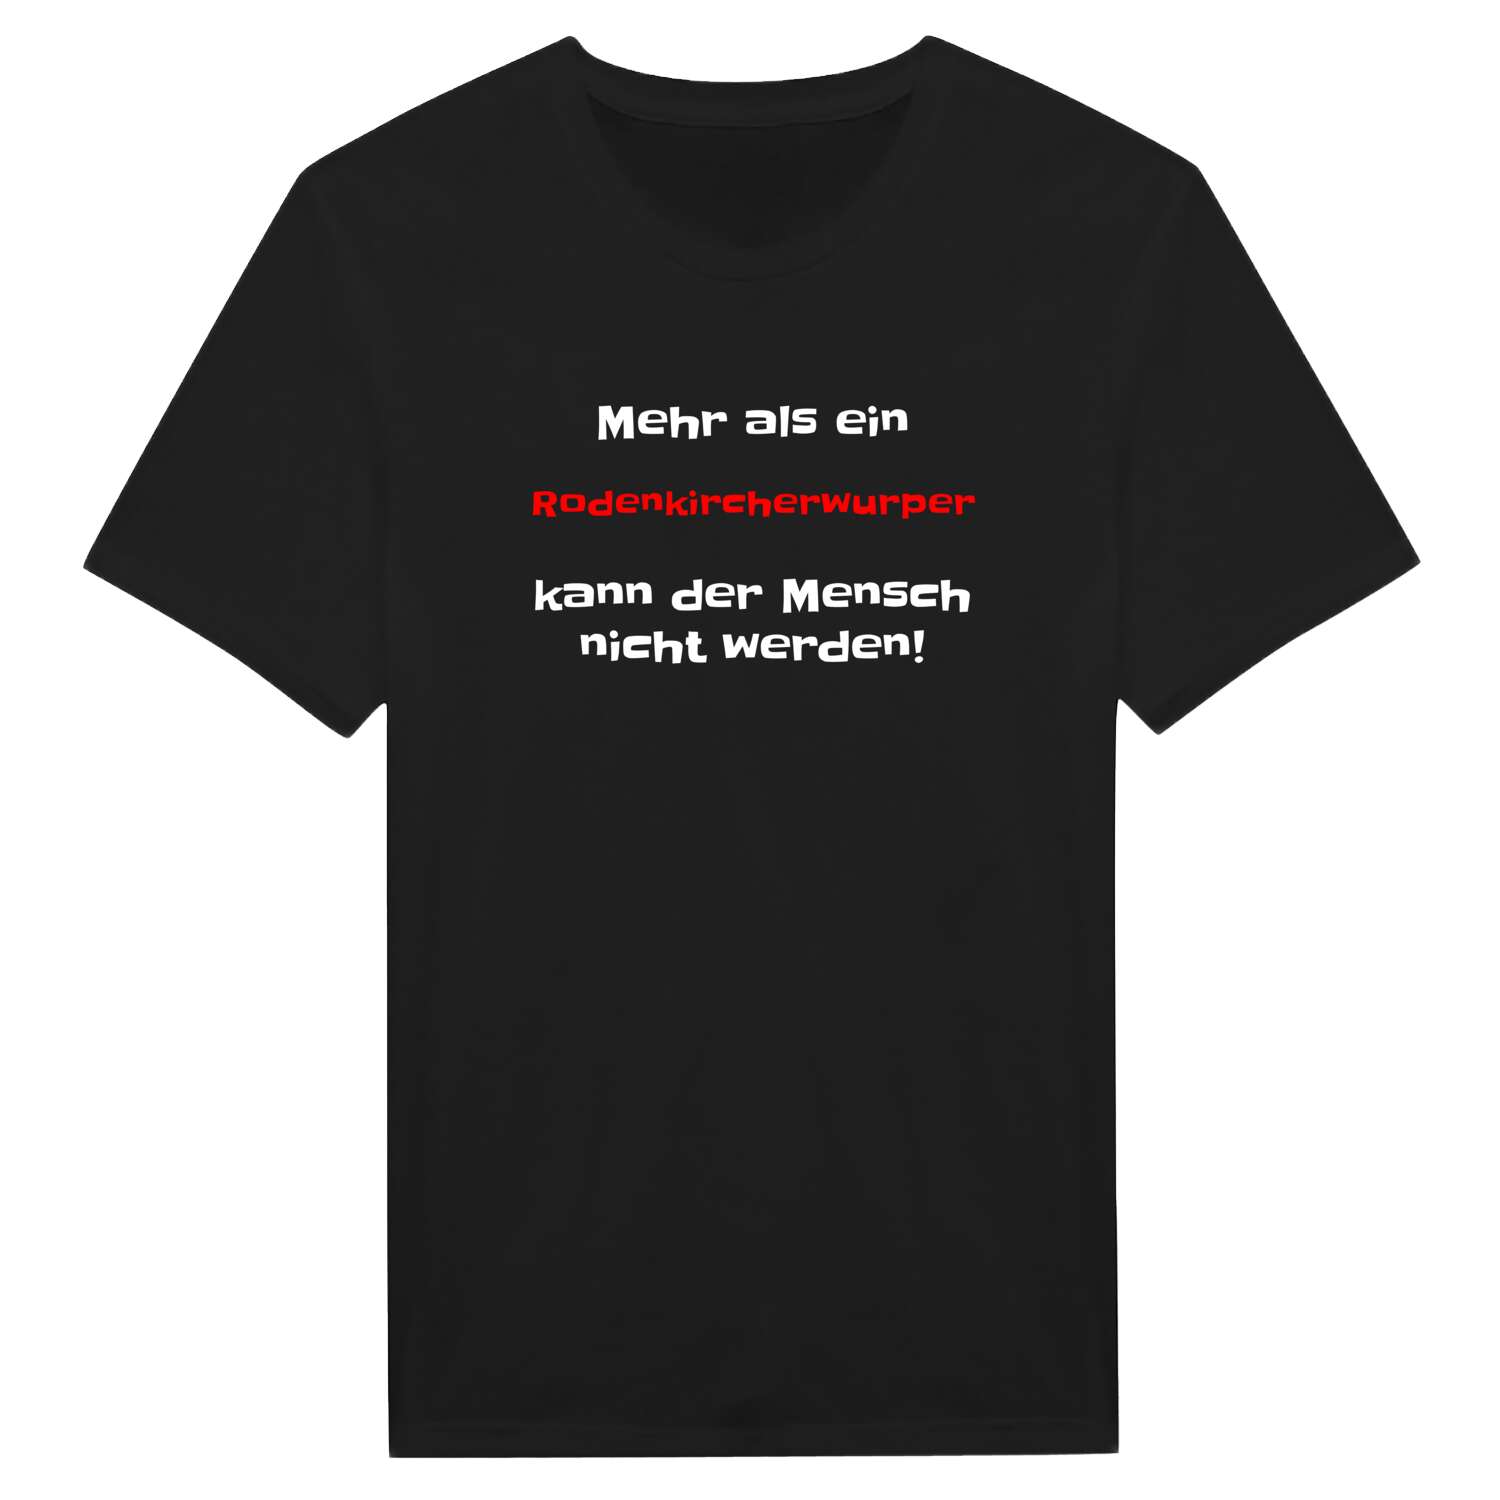 Rodenkircherwurp T-Shirt »Mehr als ein«